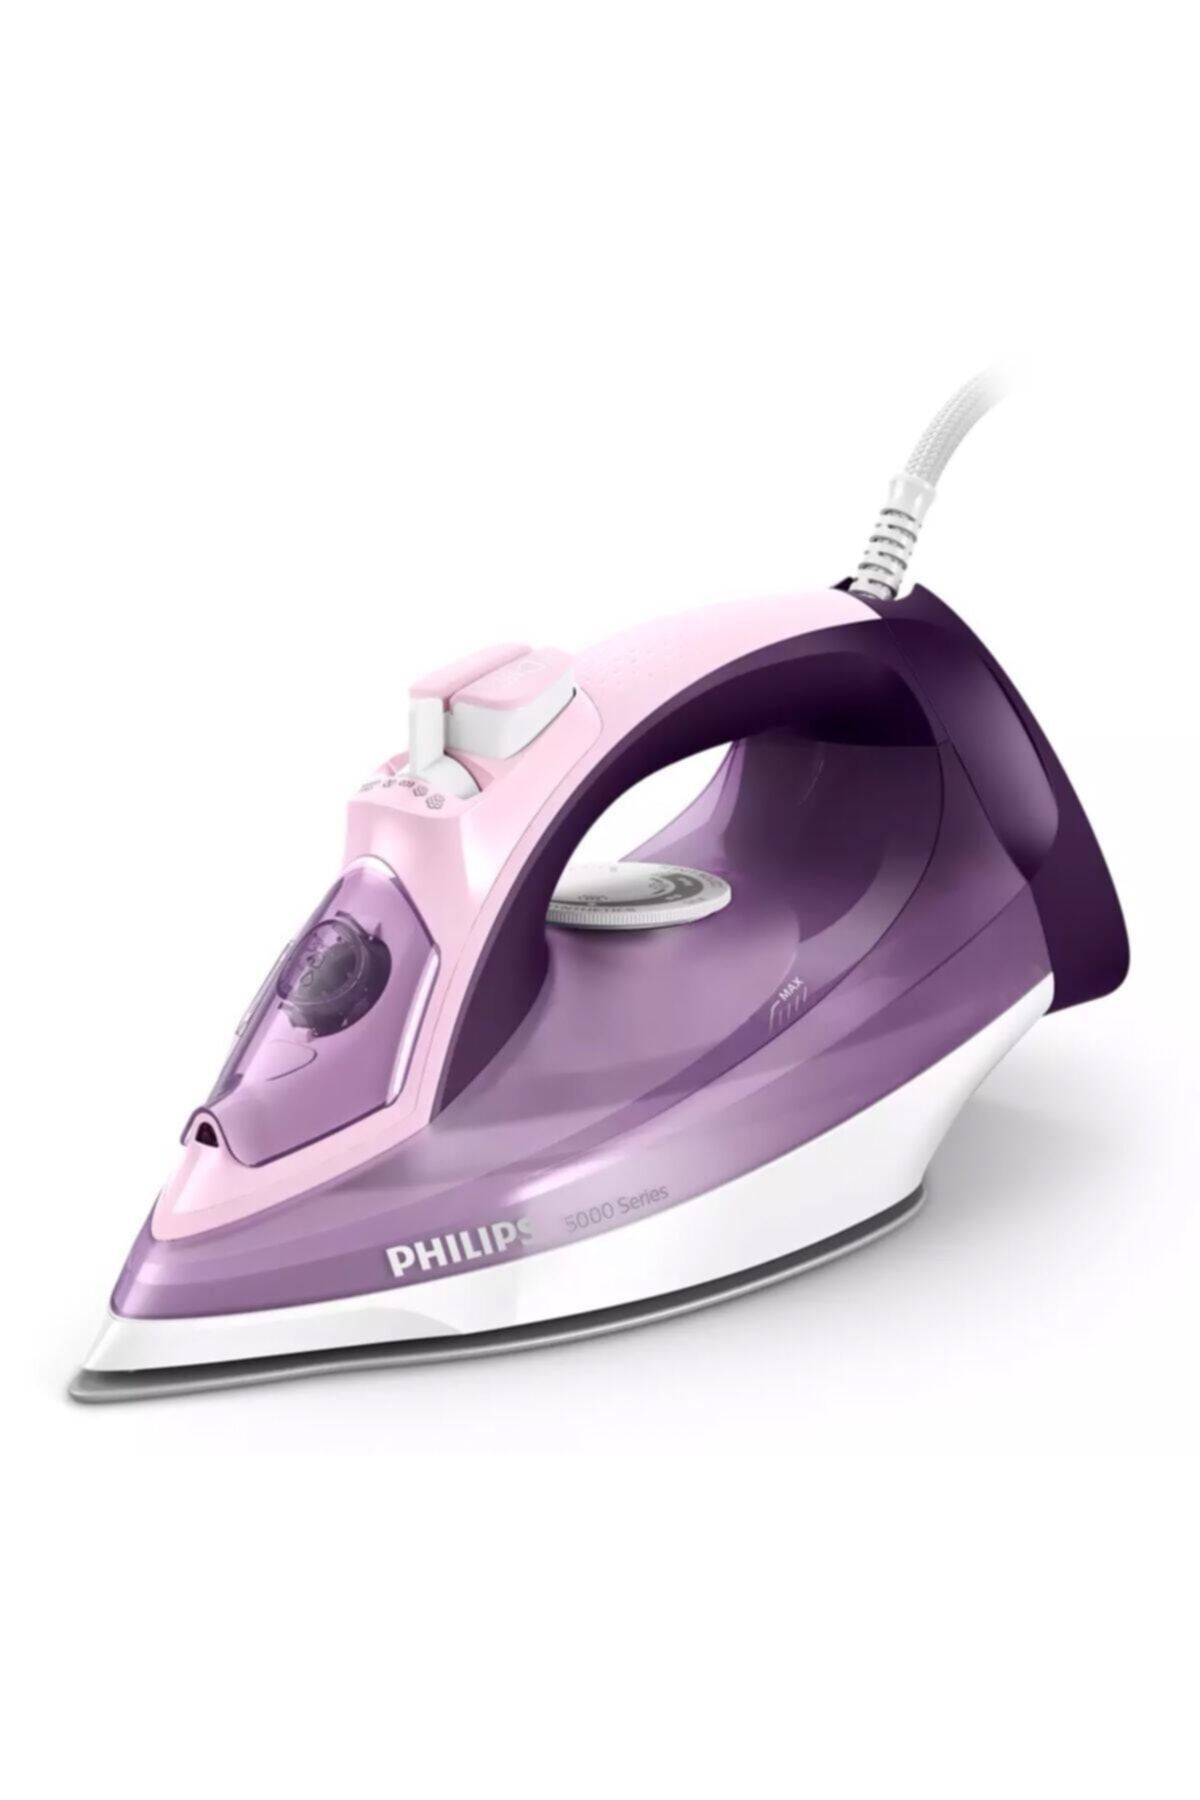 Philips DST5020/30 Buharlı Ütü Mor/Beyaz Şok Buharlı 2400 W